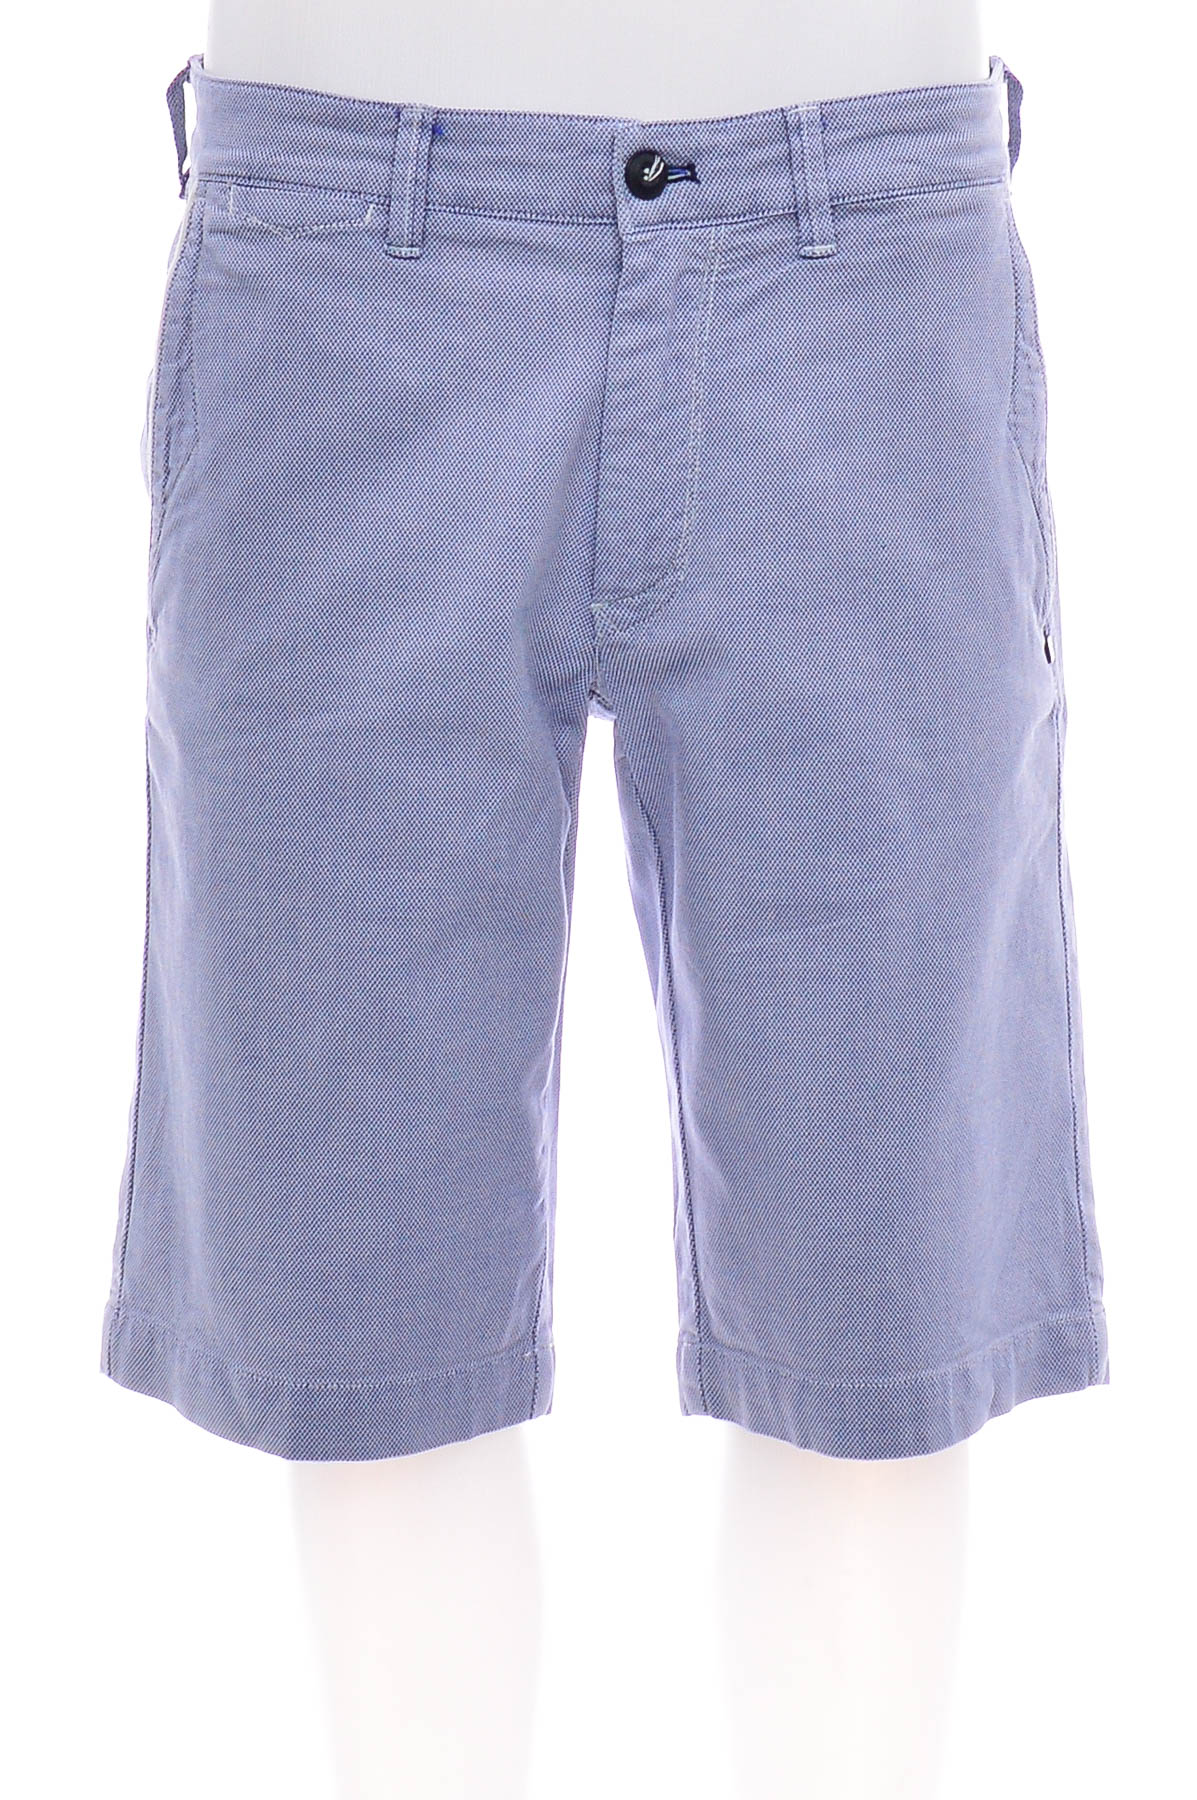 Men's shorts - Mason's - 0